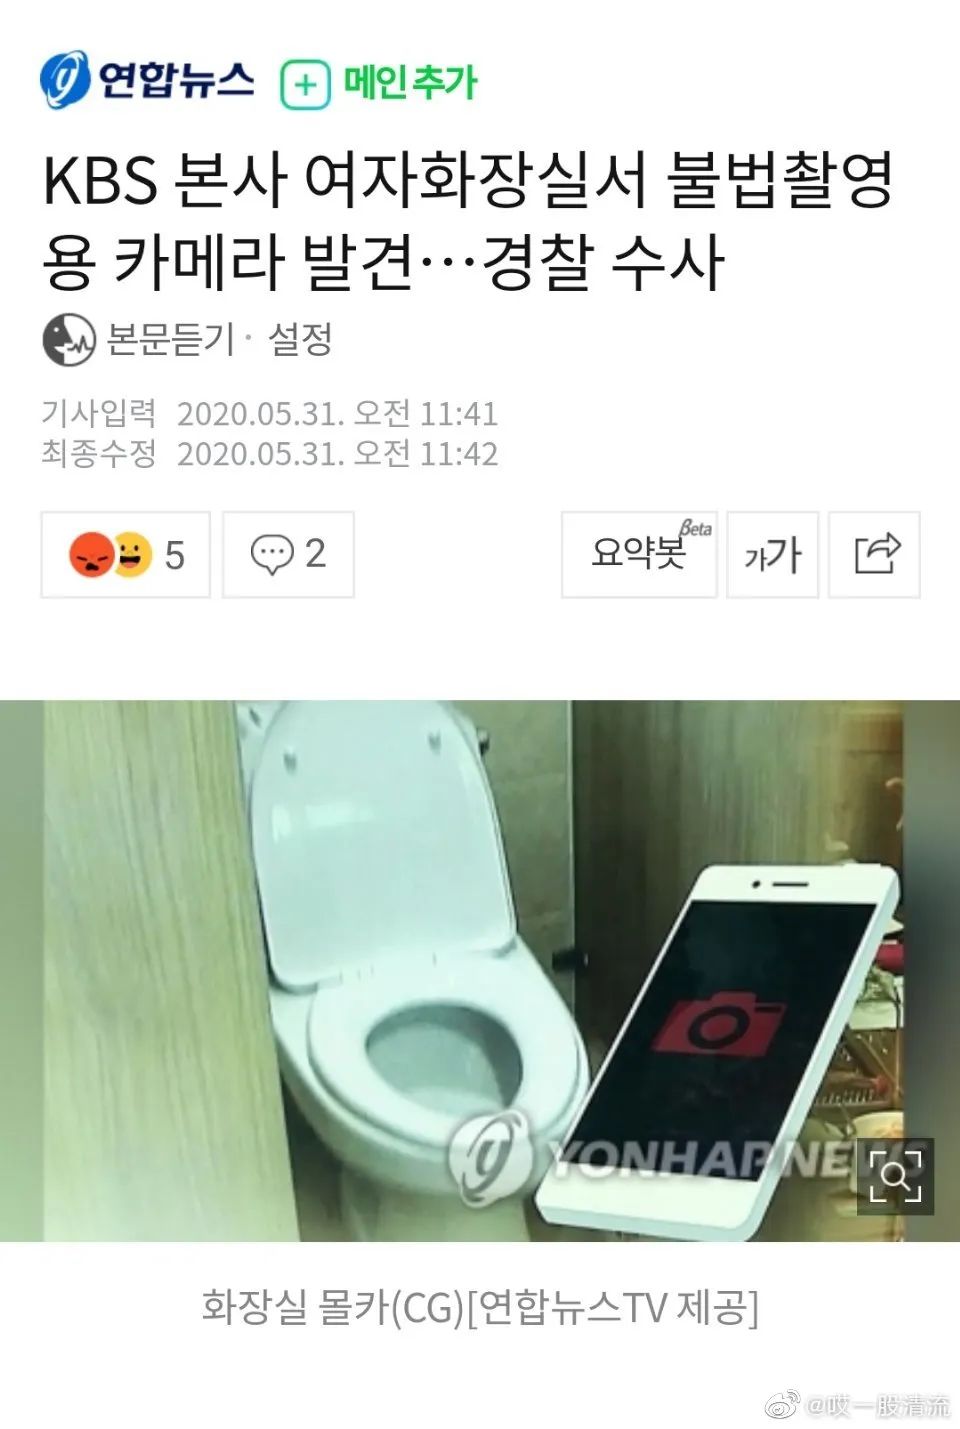 KBS大楼女洗手间发现隐藏摄像机 警方已展开调查